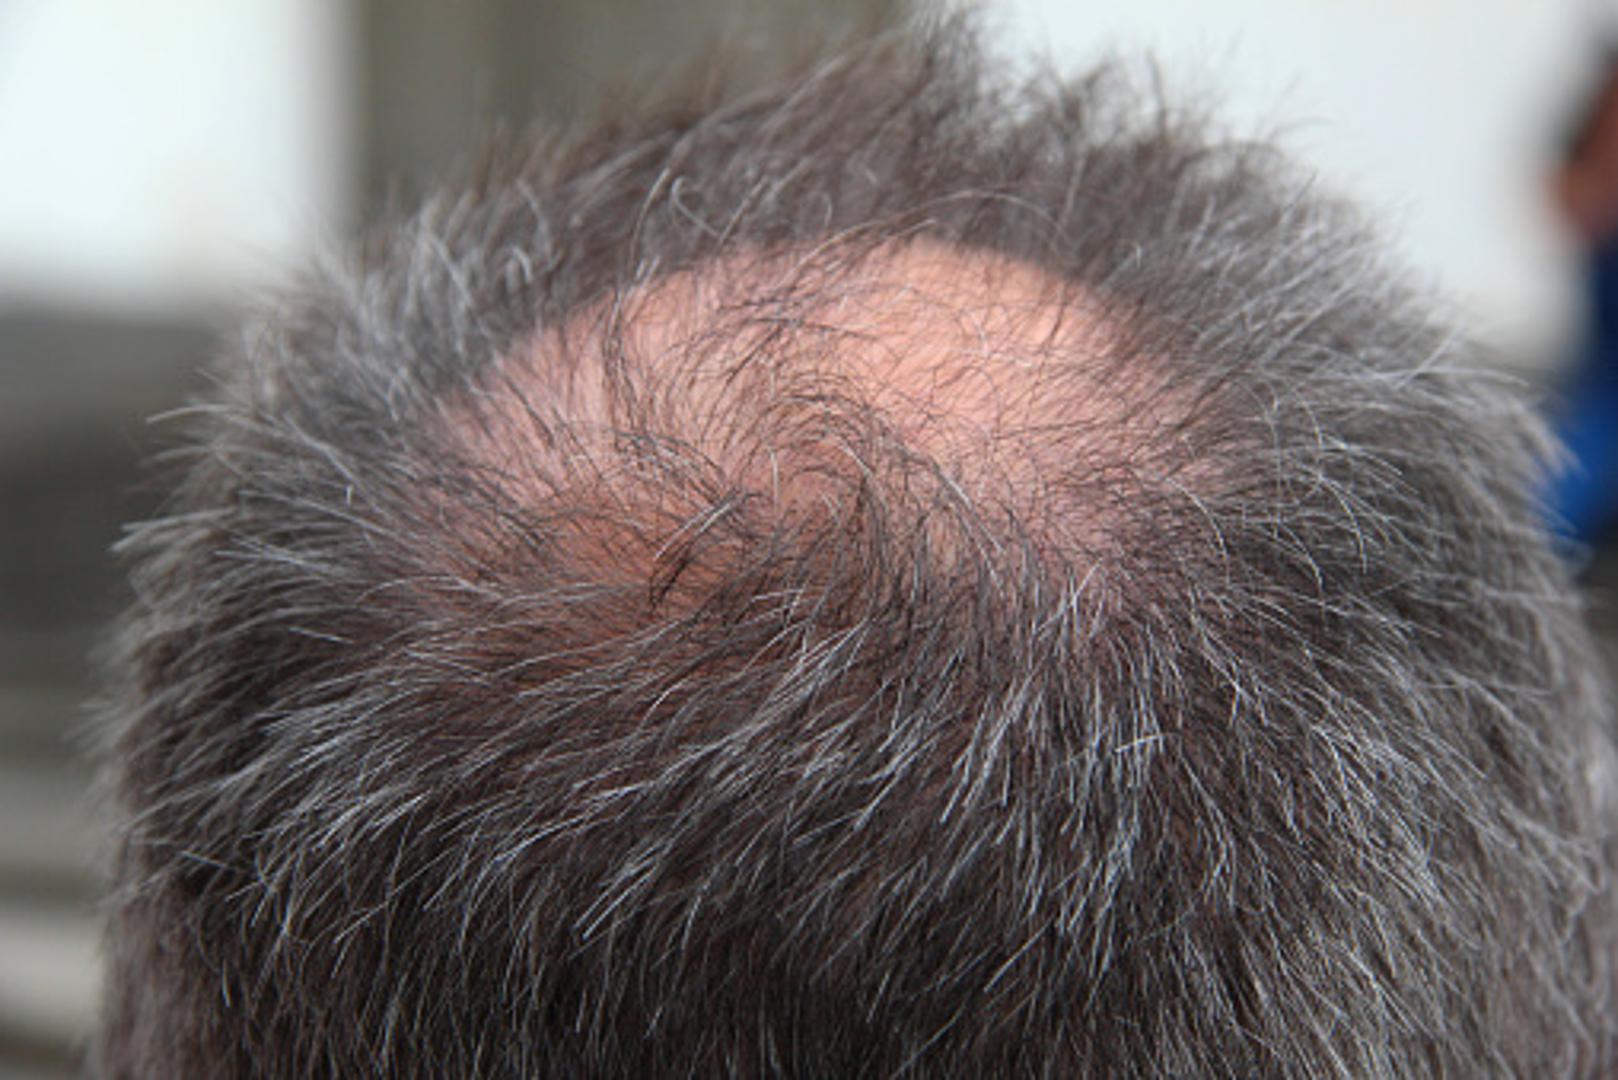 Imate nedijagnosticiranu autoimunu bolest – Alopecija areata je iznenadan gubitak kose ili dlaka. Riječ je o autoimunoj bolesti u kojoj vlastiti imunološki sustav iz dosad nepoznatog razloga napada folikule dlaka u koži i dolazi do opadanja kose.